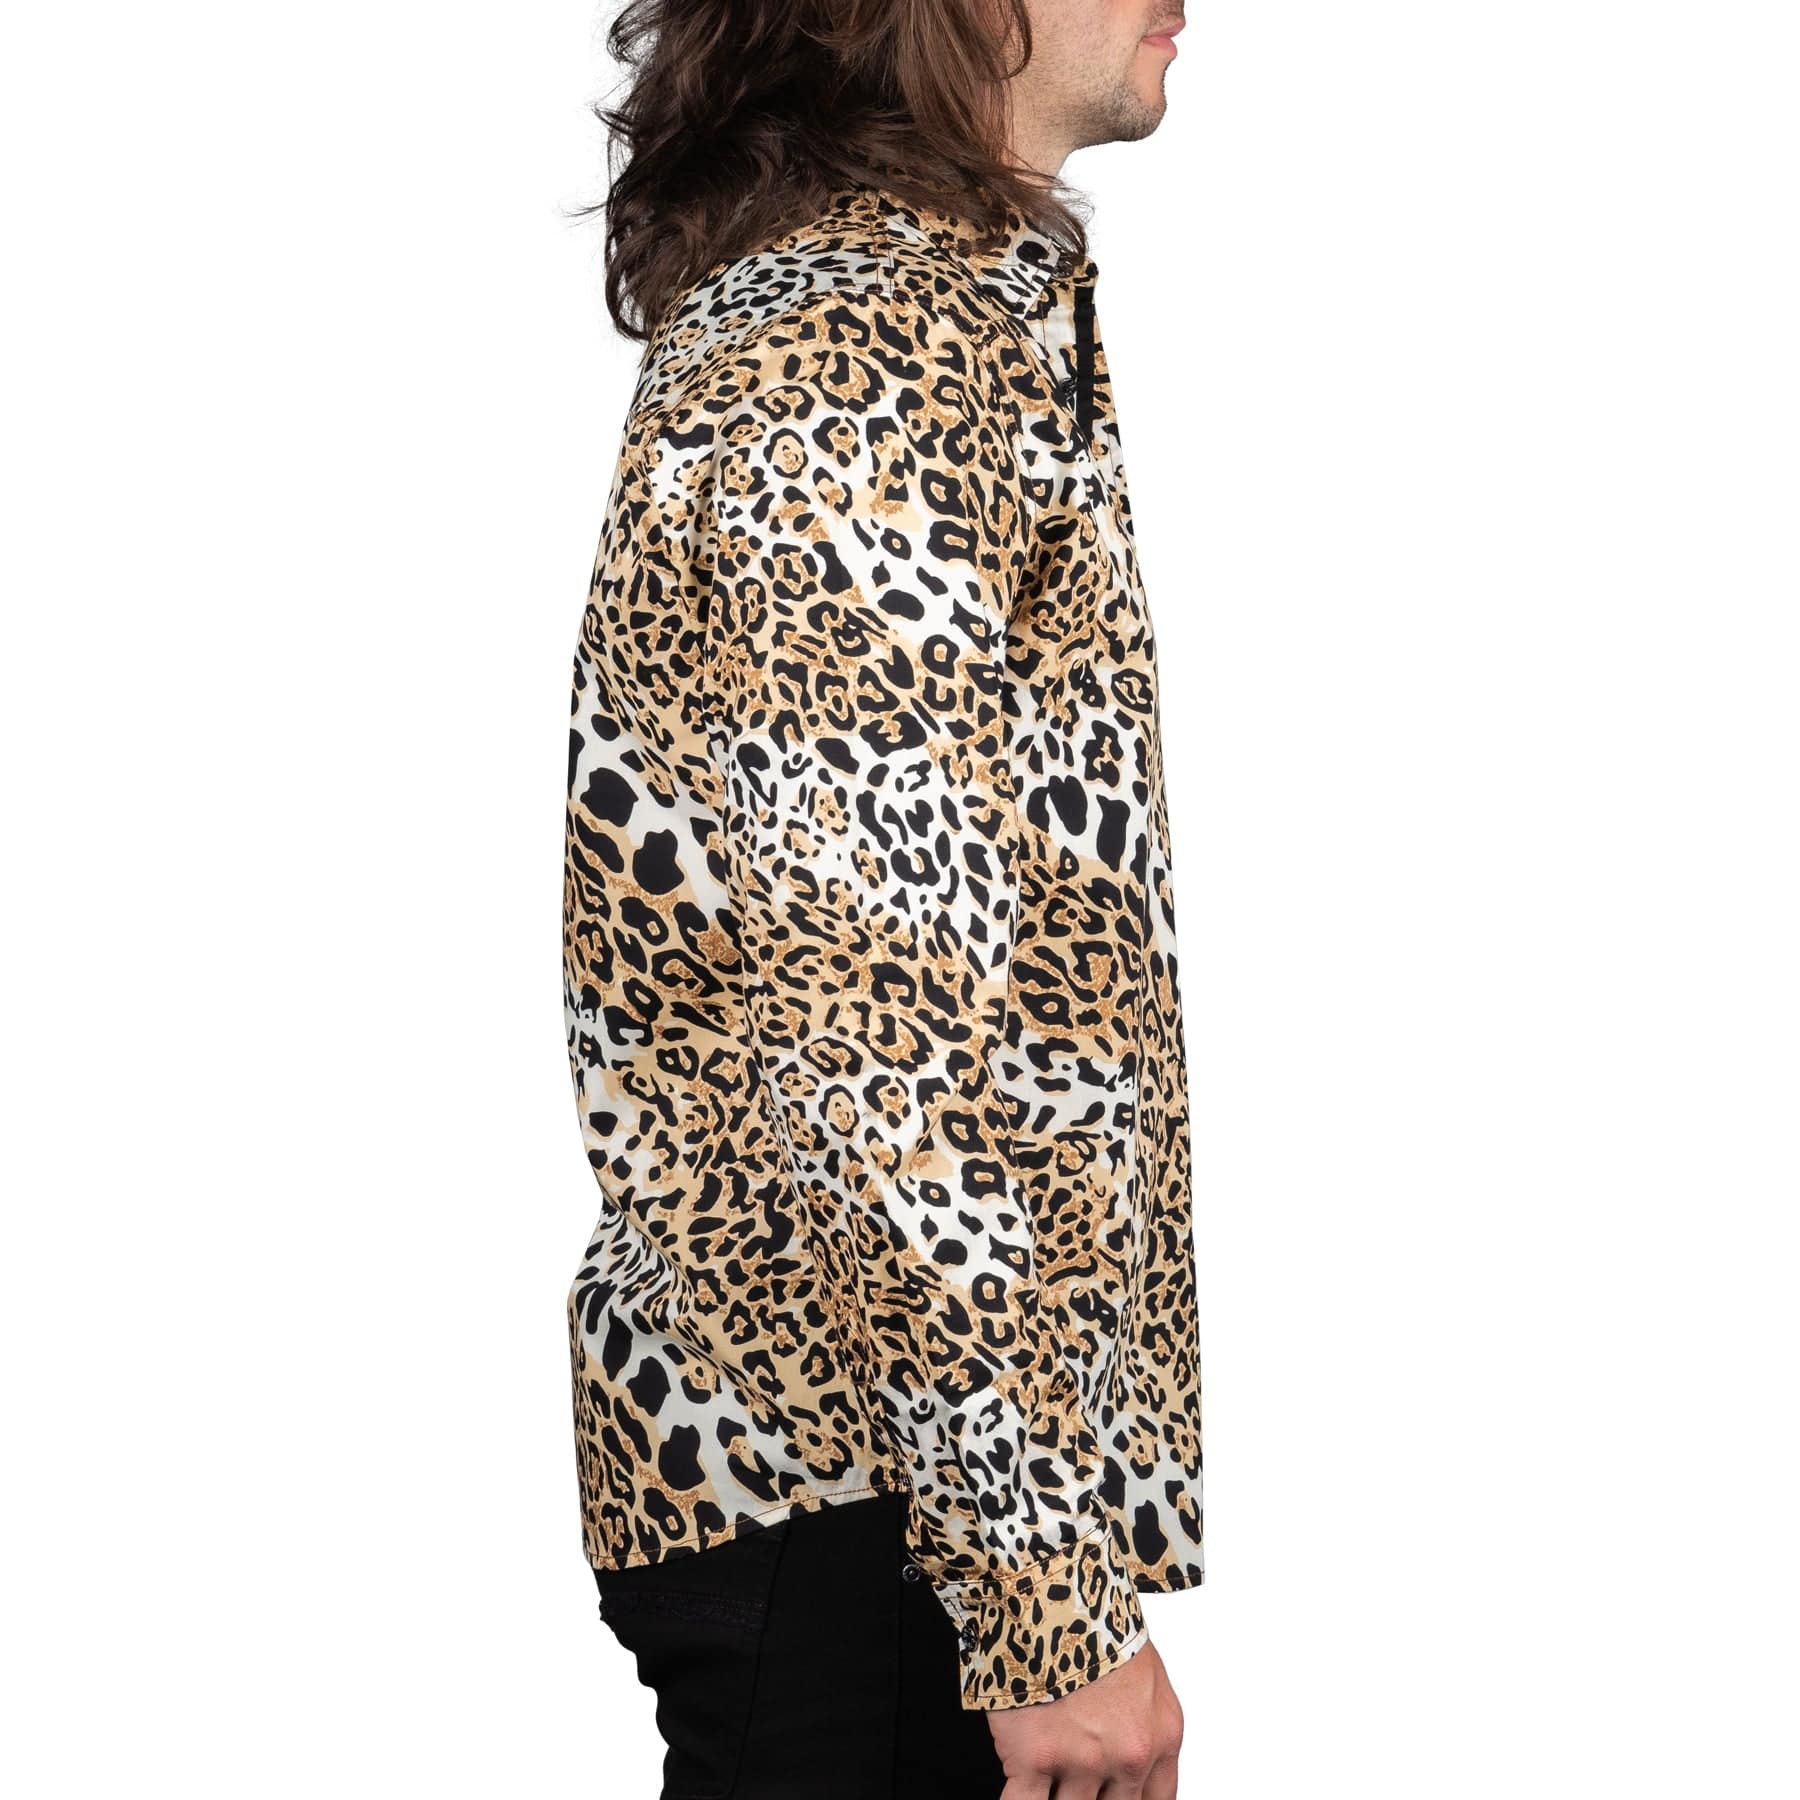 Wornstar Clothing Mens Shirt. Button Down Long Sleeve Leopard Shirt